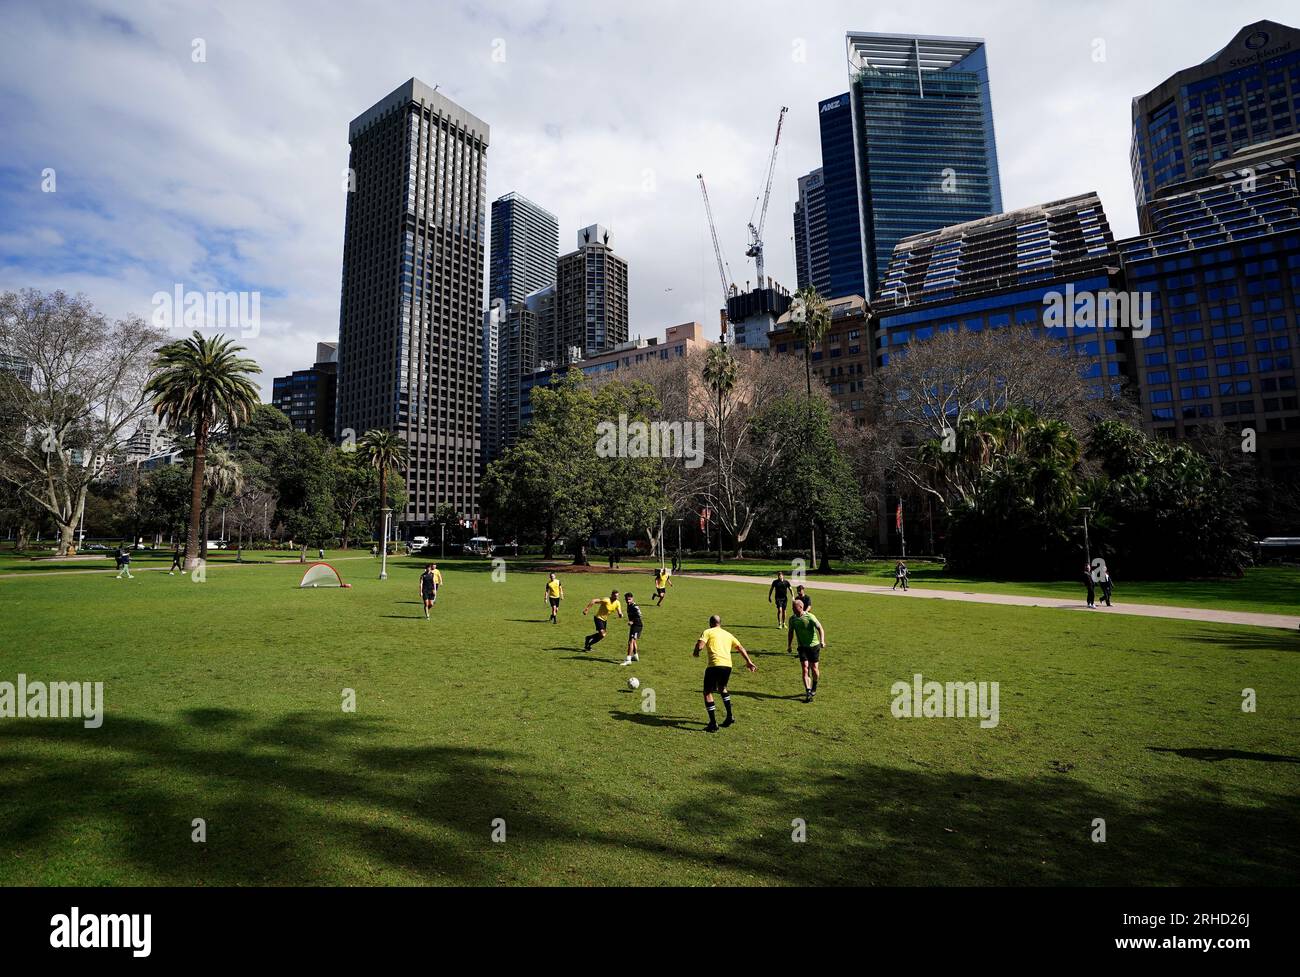 Una visione generale delle persone che giocano a calcio a Hyde Park prima della semifinale della Coppa del mondo femminile FIFA allo Stadium Australia, Sydney. Data foto: Mercoledì 16 agosto 2023. Foto Stock